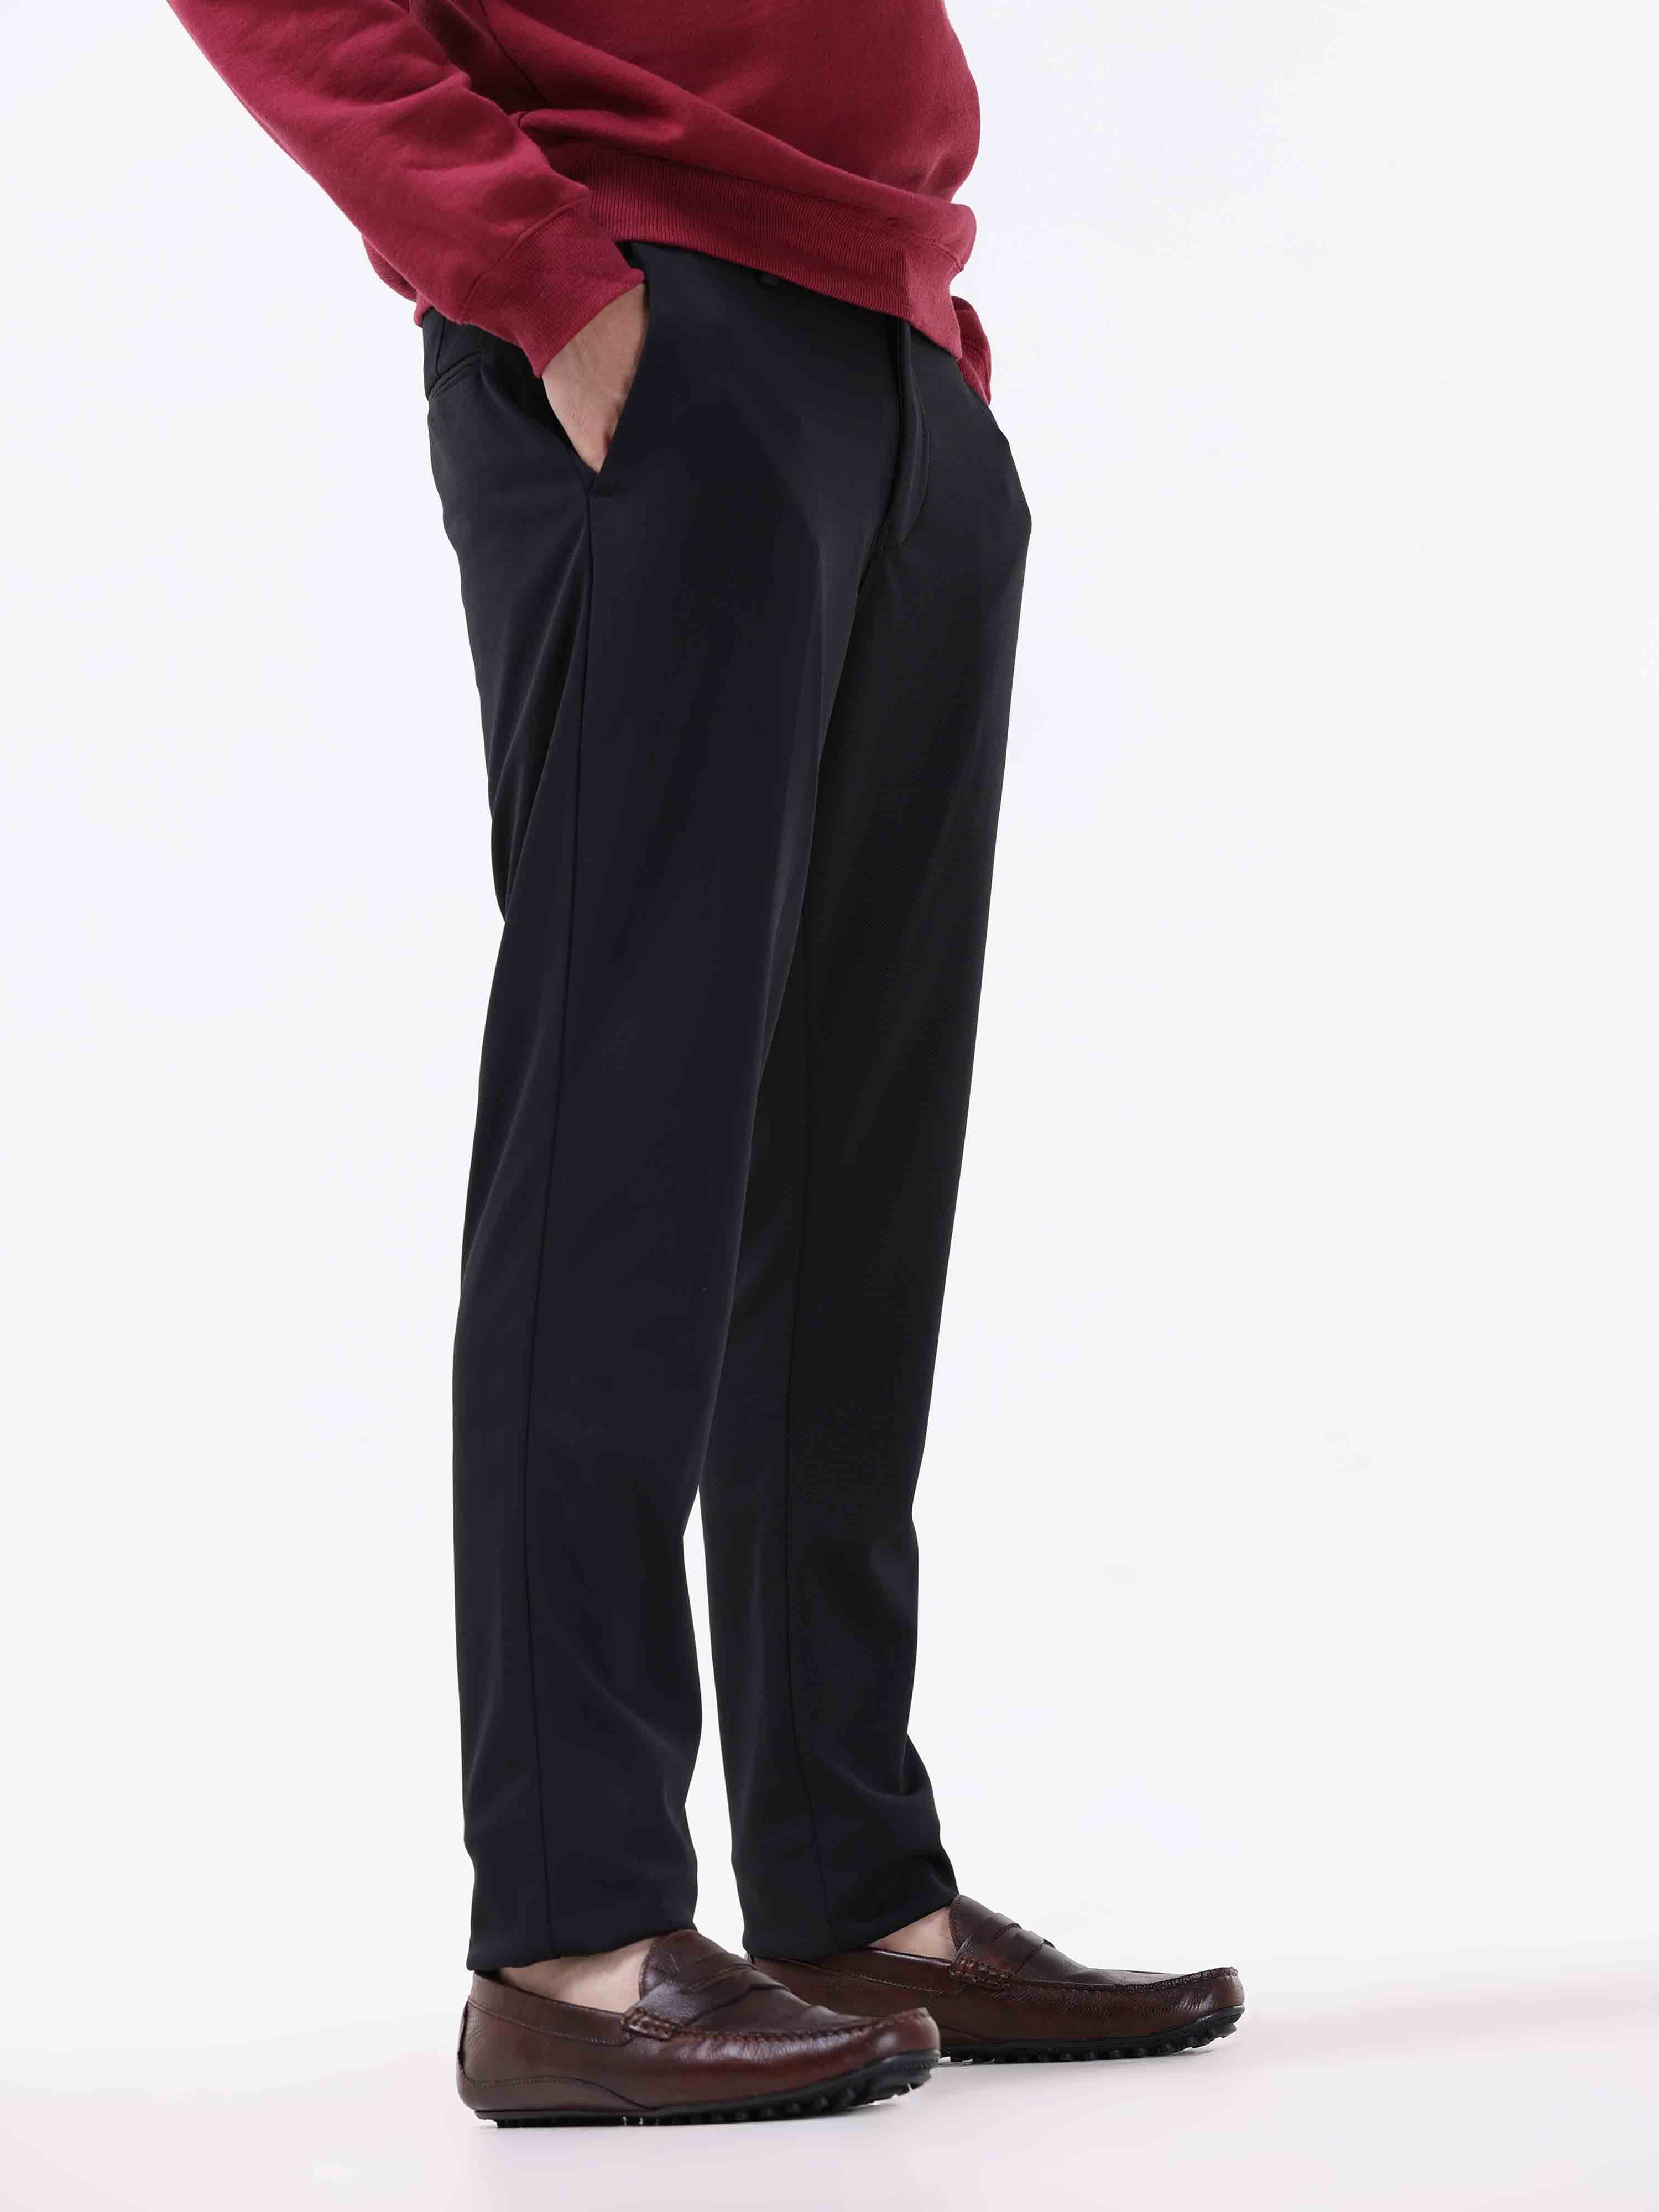 Denim Slim Fit Jeans For Men Heavy Stretchable Jeans Black Pant, Black  Colour, 28 Size -